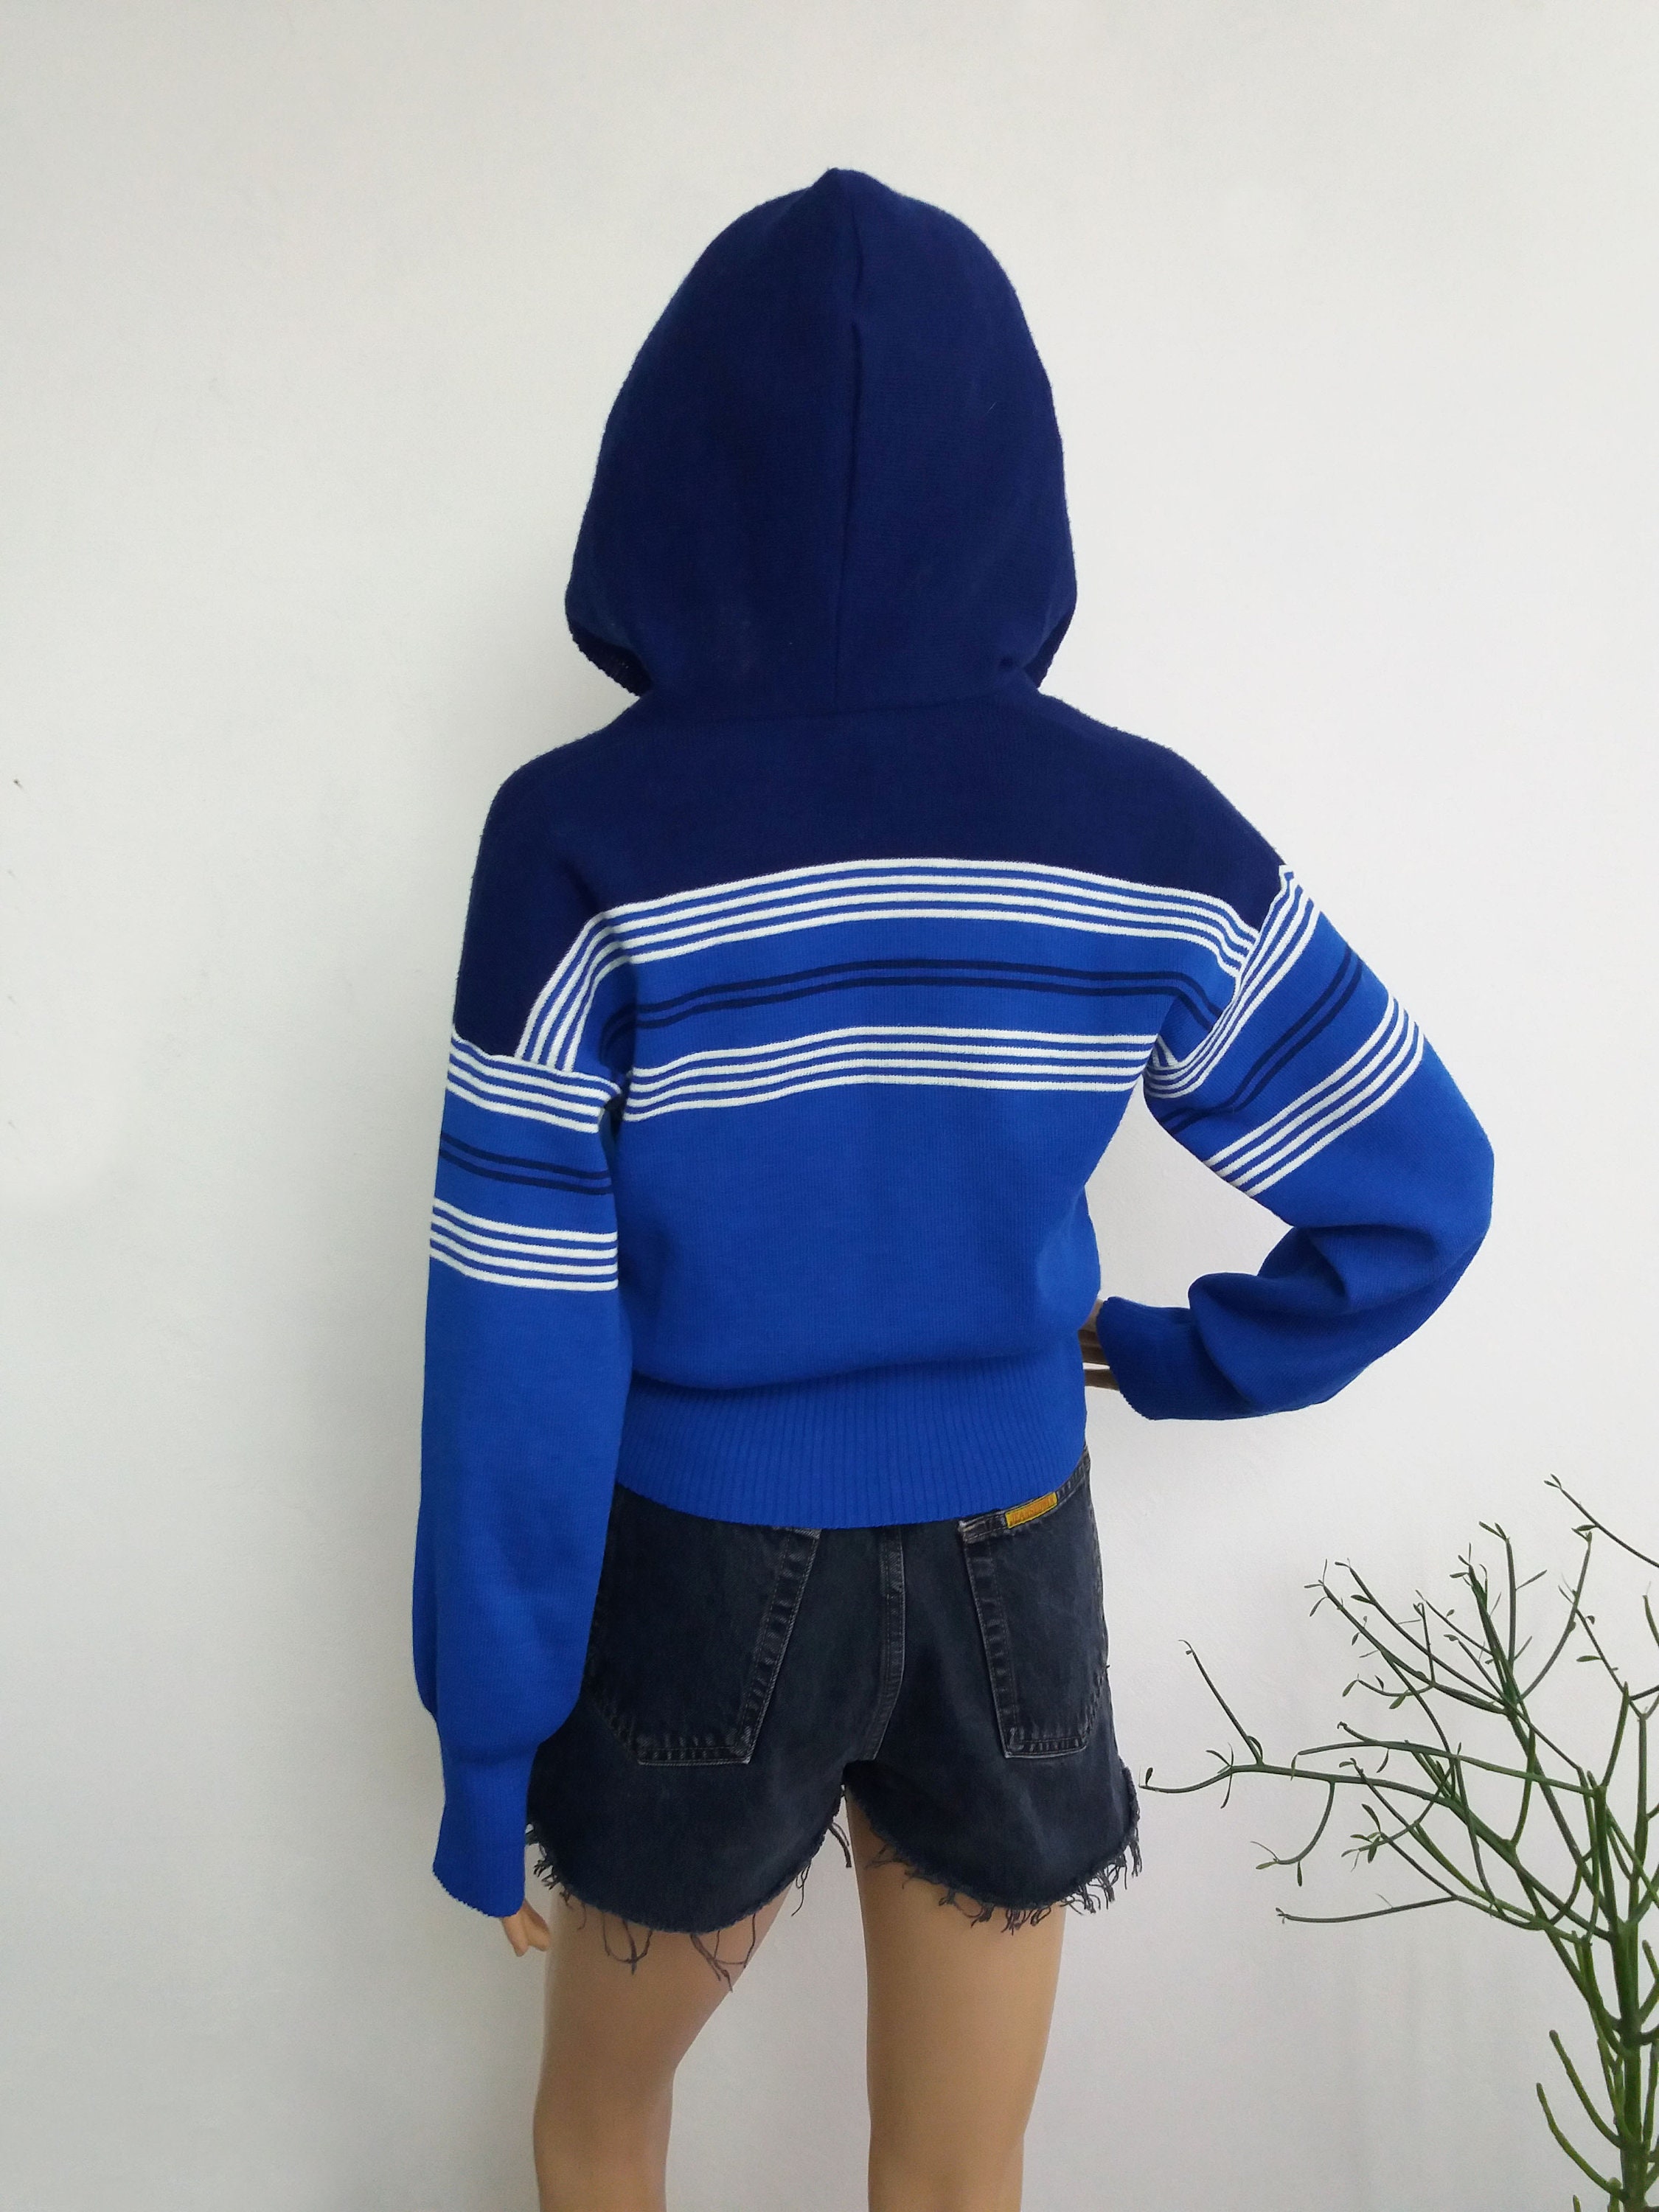 Strickermann Knit Sports Sweater German Hooded Blue Sport | Etsy